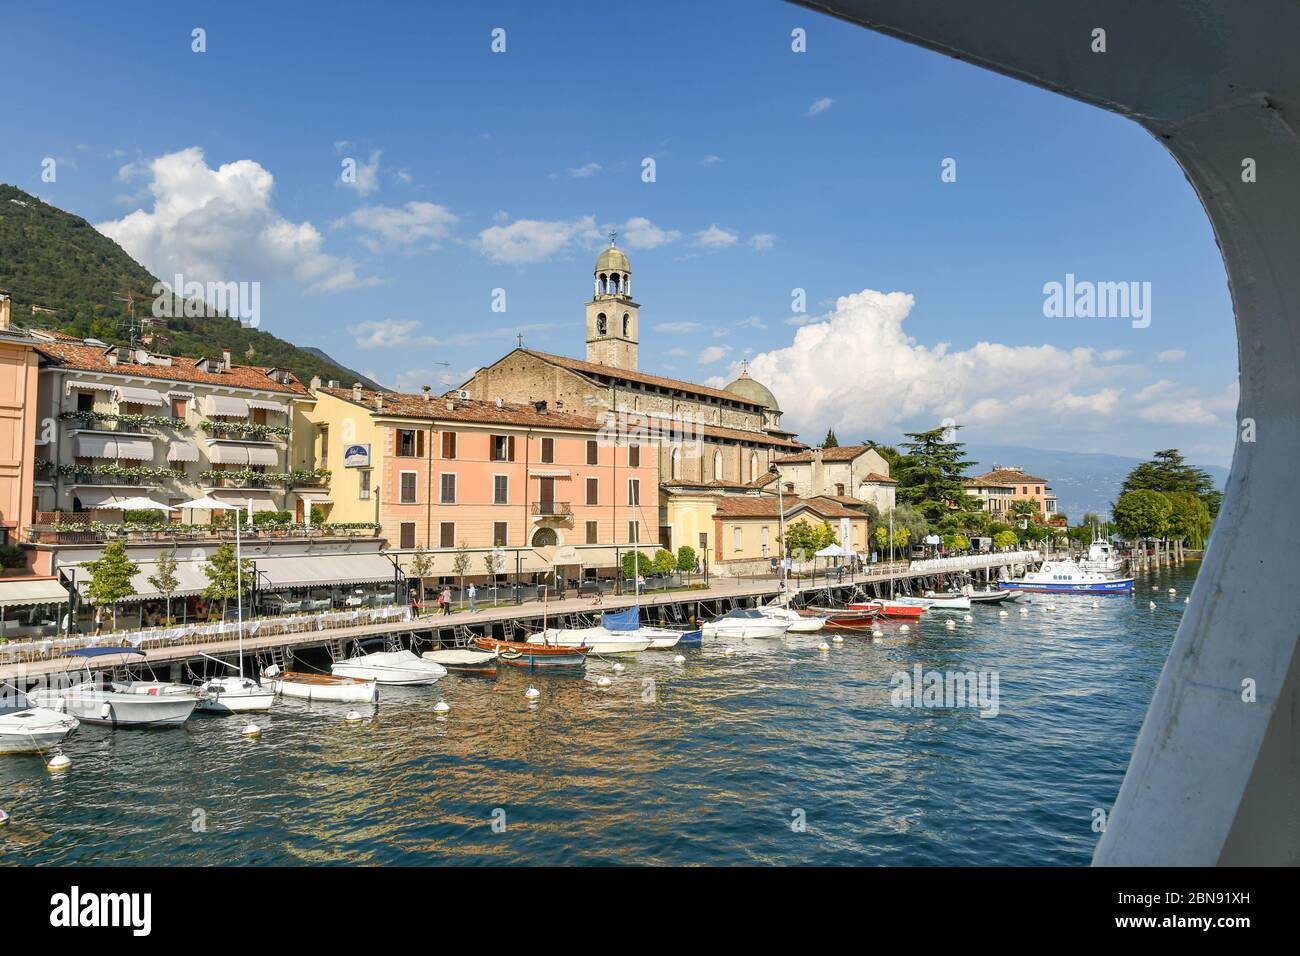 SALO, ITALIE - SEPTEMBRE 2018 : bord de lac de la ville de Salo sur le lac de Garde avec vue encadrée par la fenêtre d'un ferry. Banque D'Images